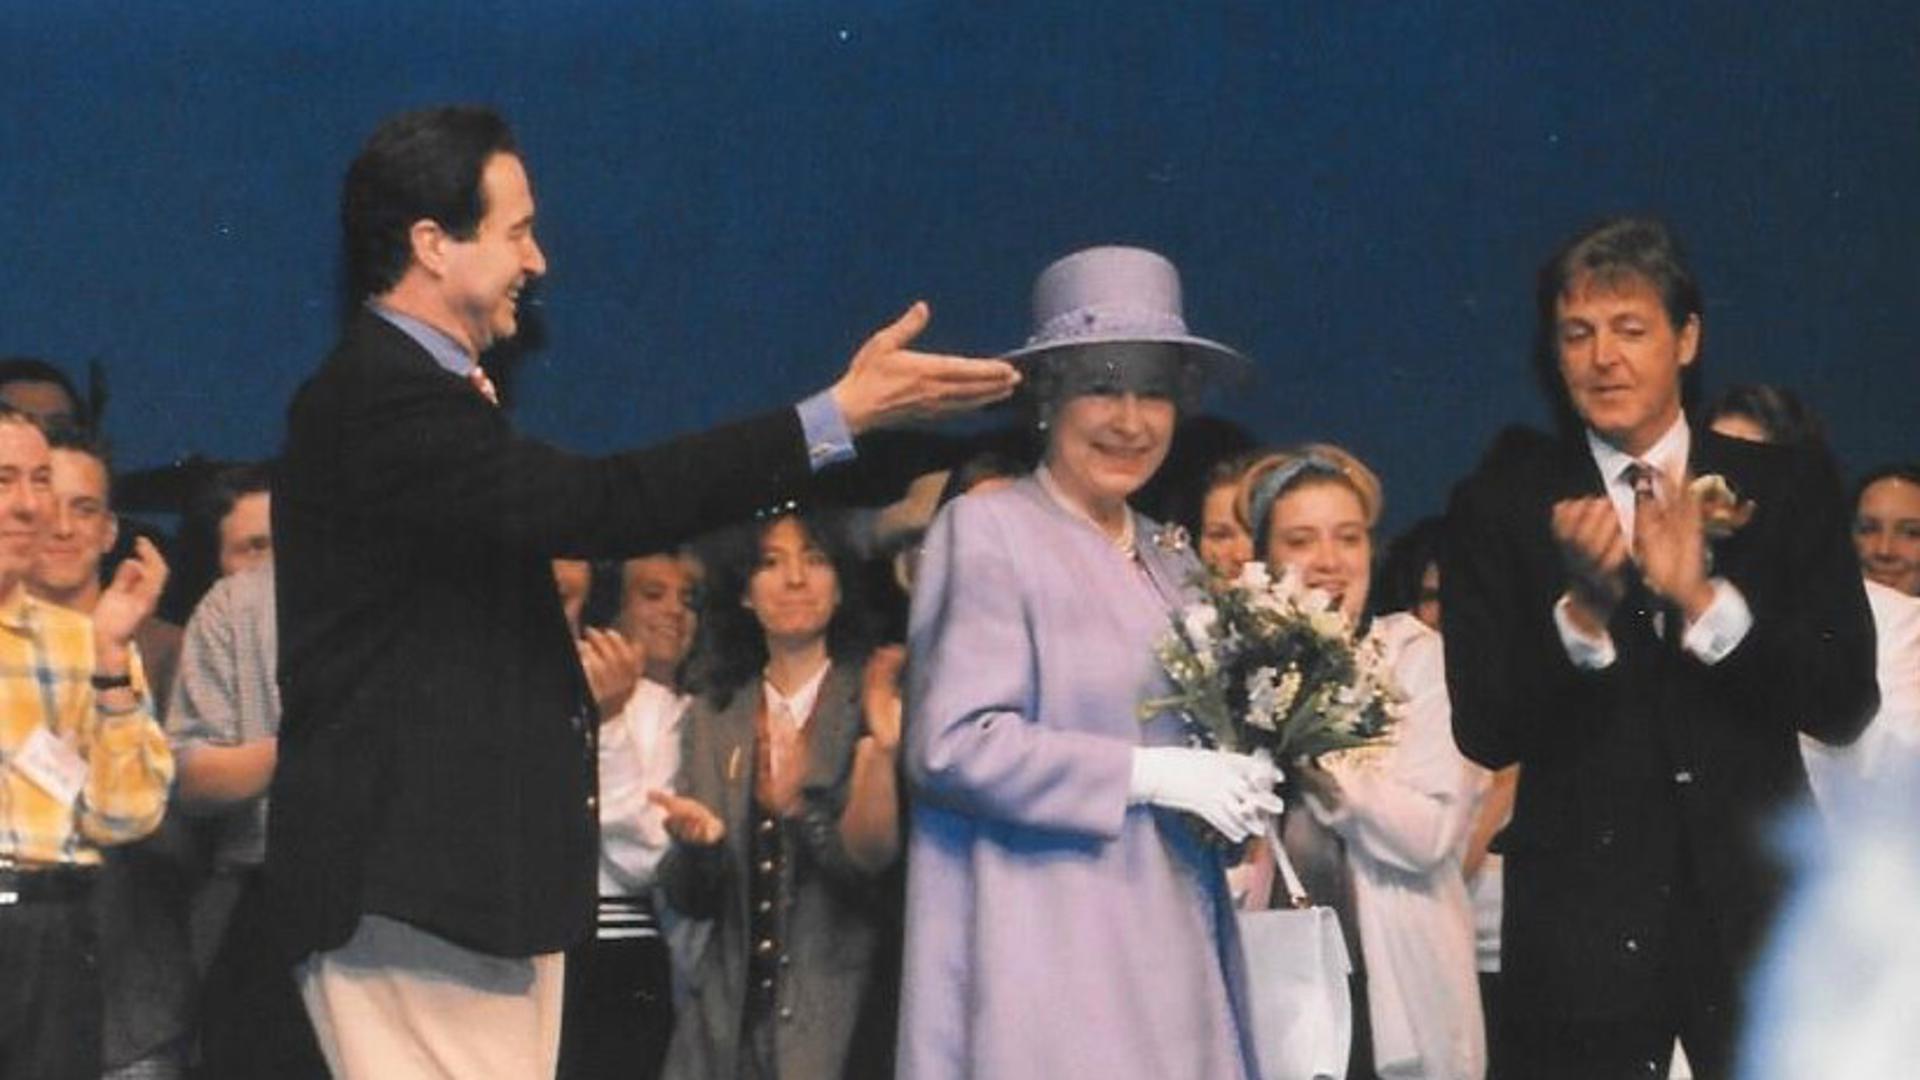 Queen Elizabeth und Paul McCartney in Liverpool. Fotografin Monica Simon aus Baden-Baden war bei dem Termin am 7. Juni 1996 mit ihrem Mann Christian als Gast eingeladen.